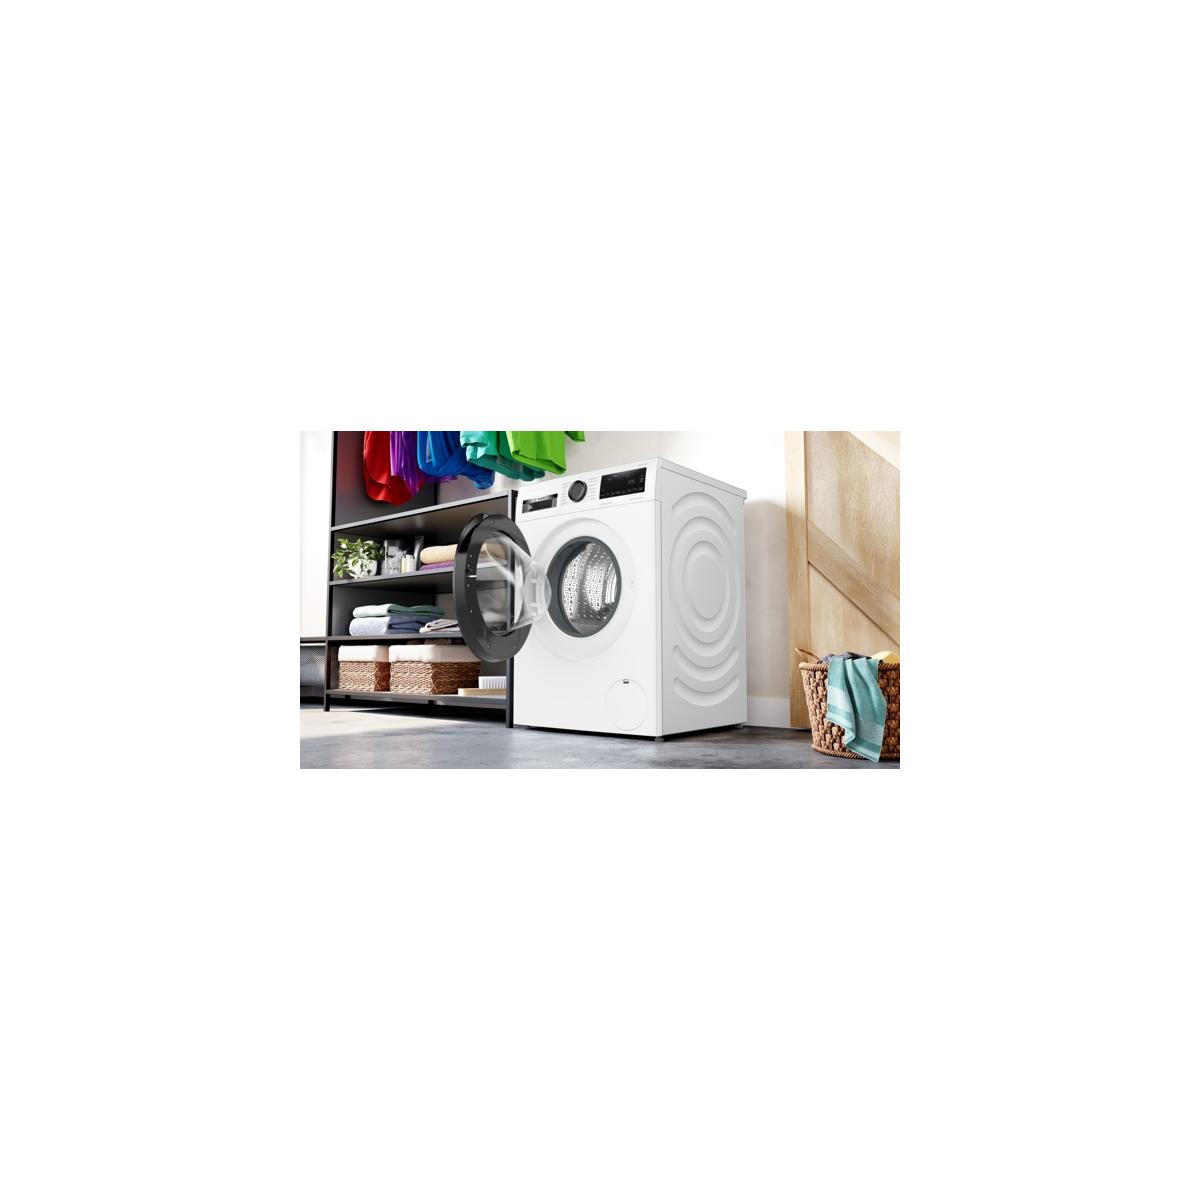 Bosch WGG154021 10kg Frontlader Waschmaschine, Wagner Umwuchtkontrolle, Plus, Mengenerkennung, Weiß Hygiene Elektroshop 1400 U/min, SpeedPerfect, Fleckenautomatik